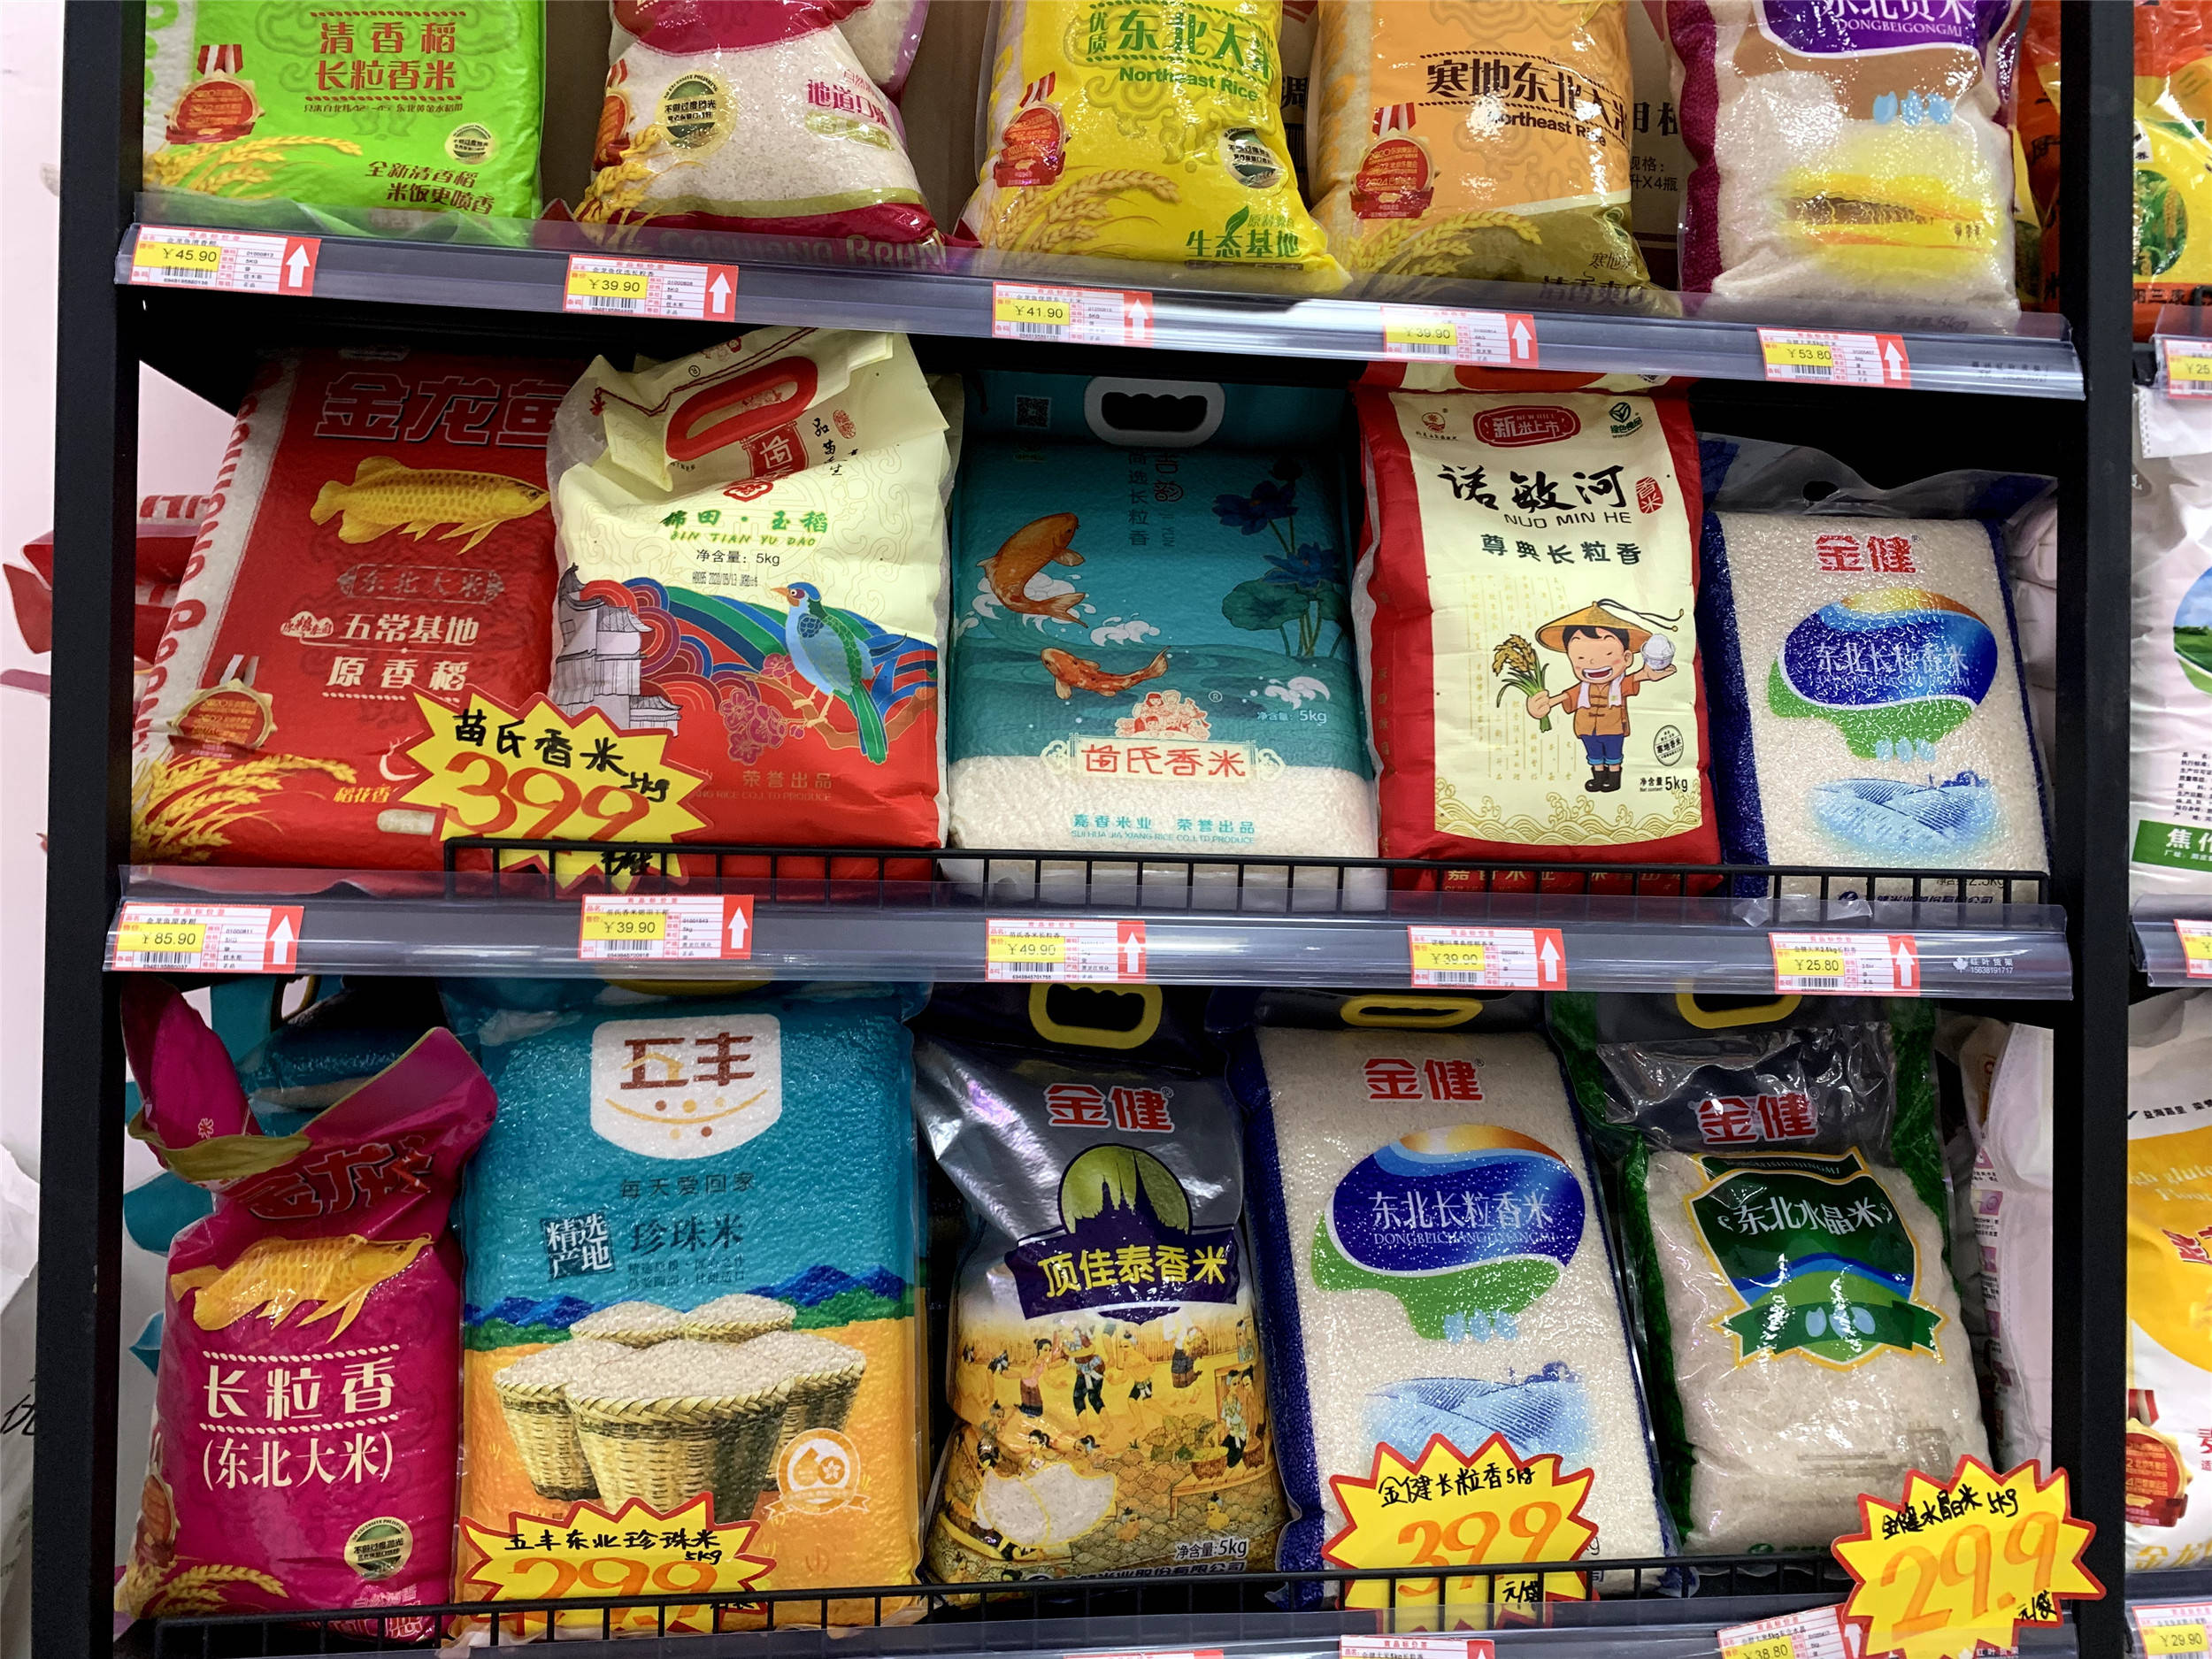 原创超市买大米袋子没这行数字不管什么牌子都是假的原产地大米